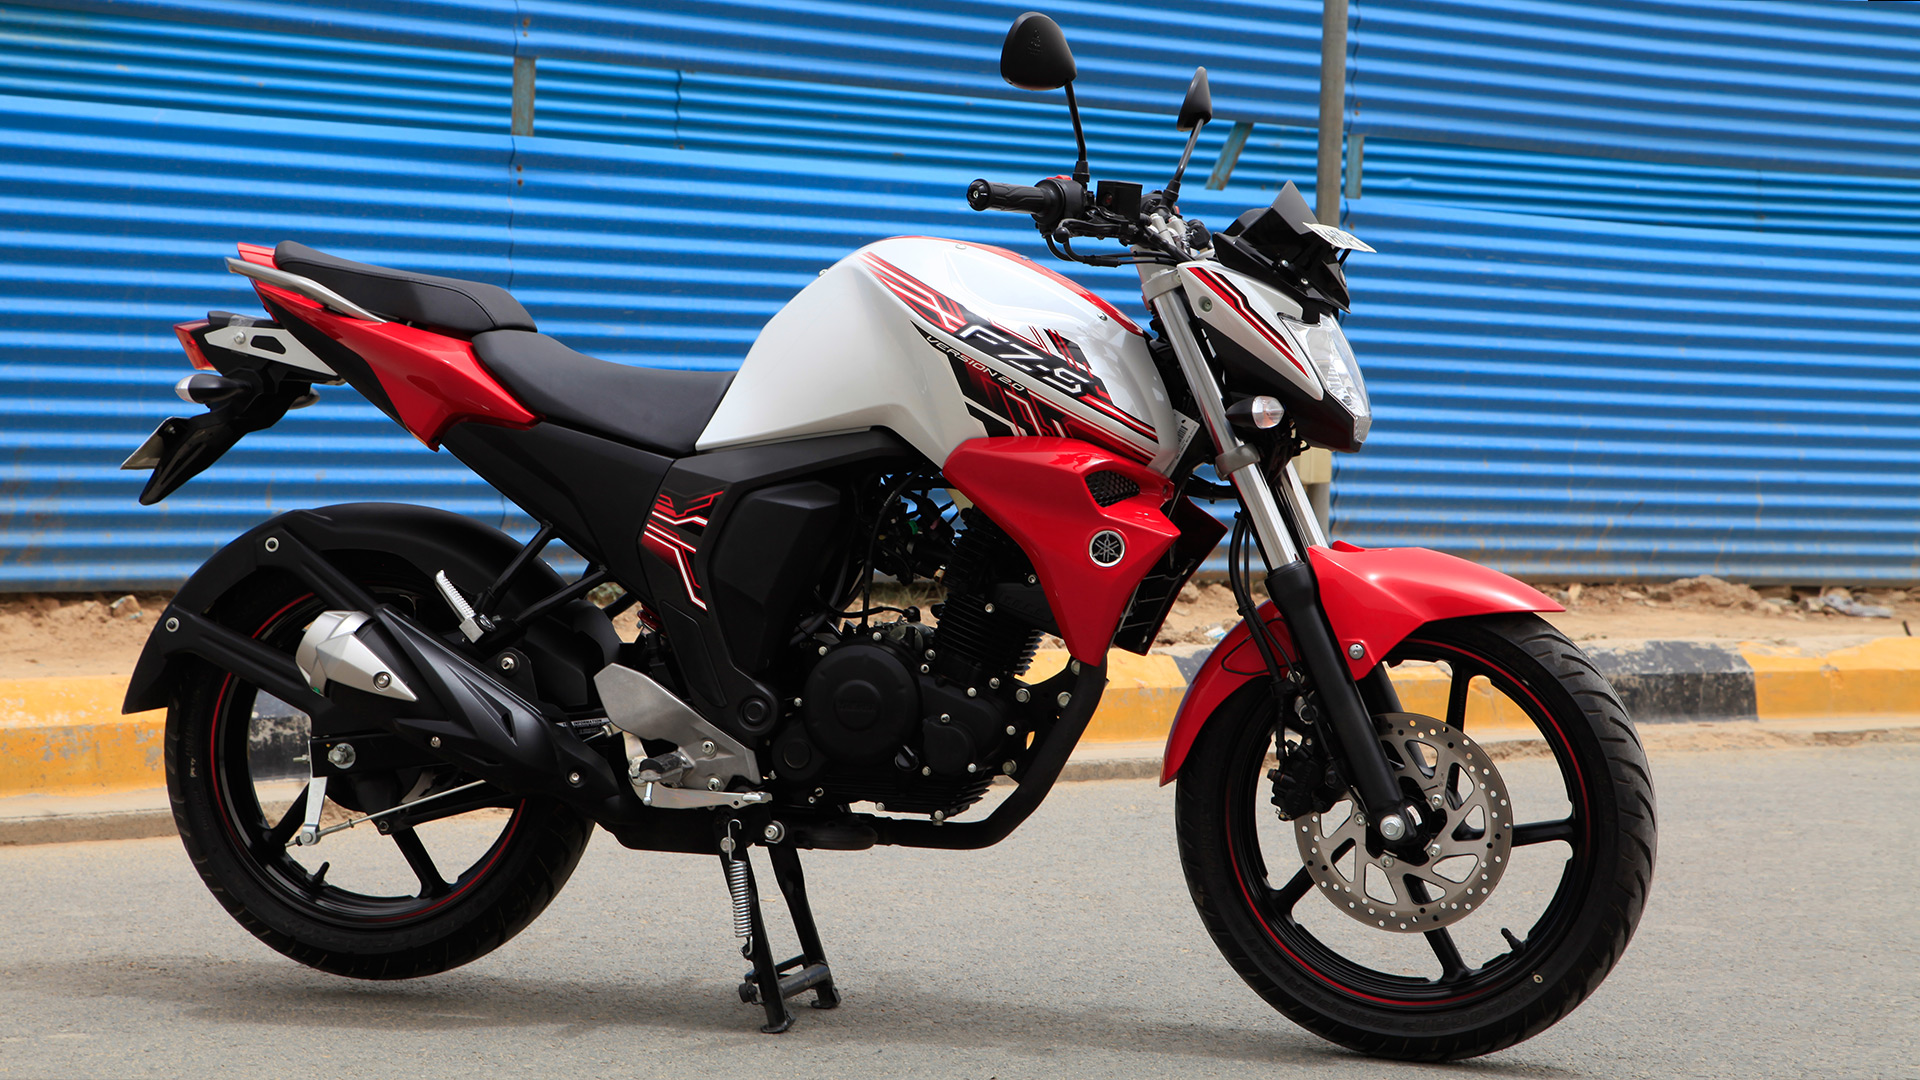 Yamaha FZ 2014 S Version 2.0 Exterior Bike Photos - Overdrive